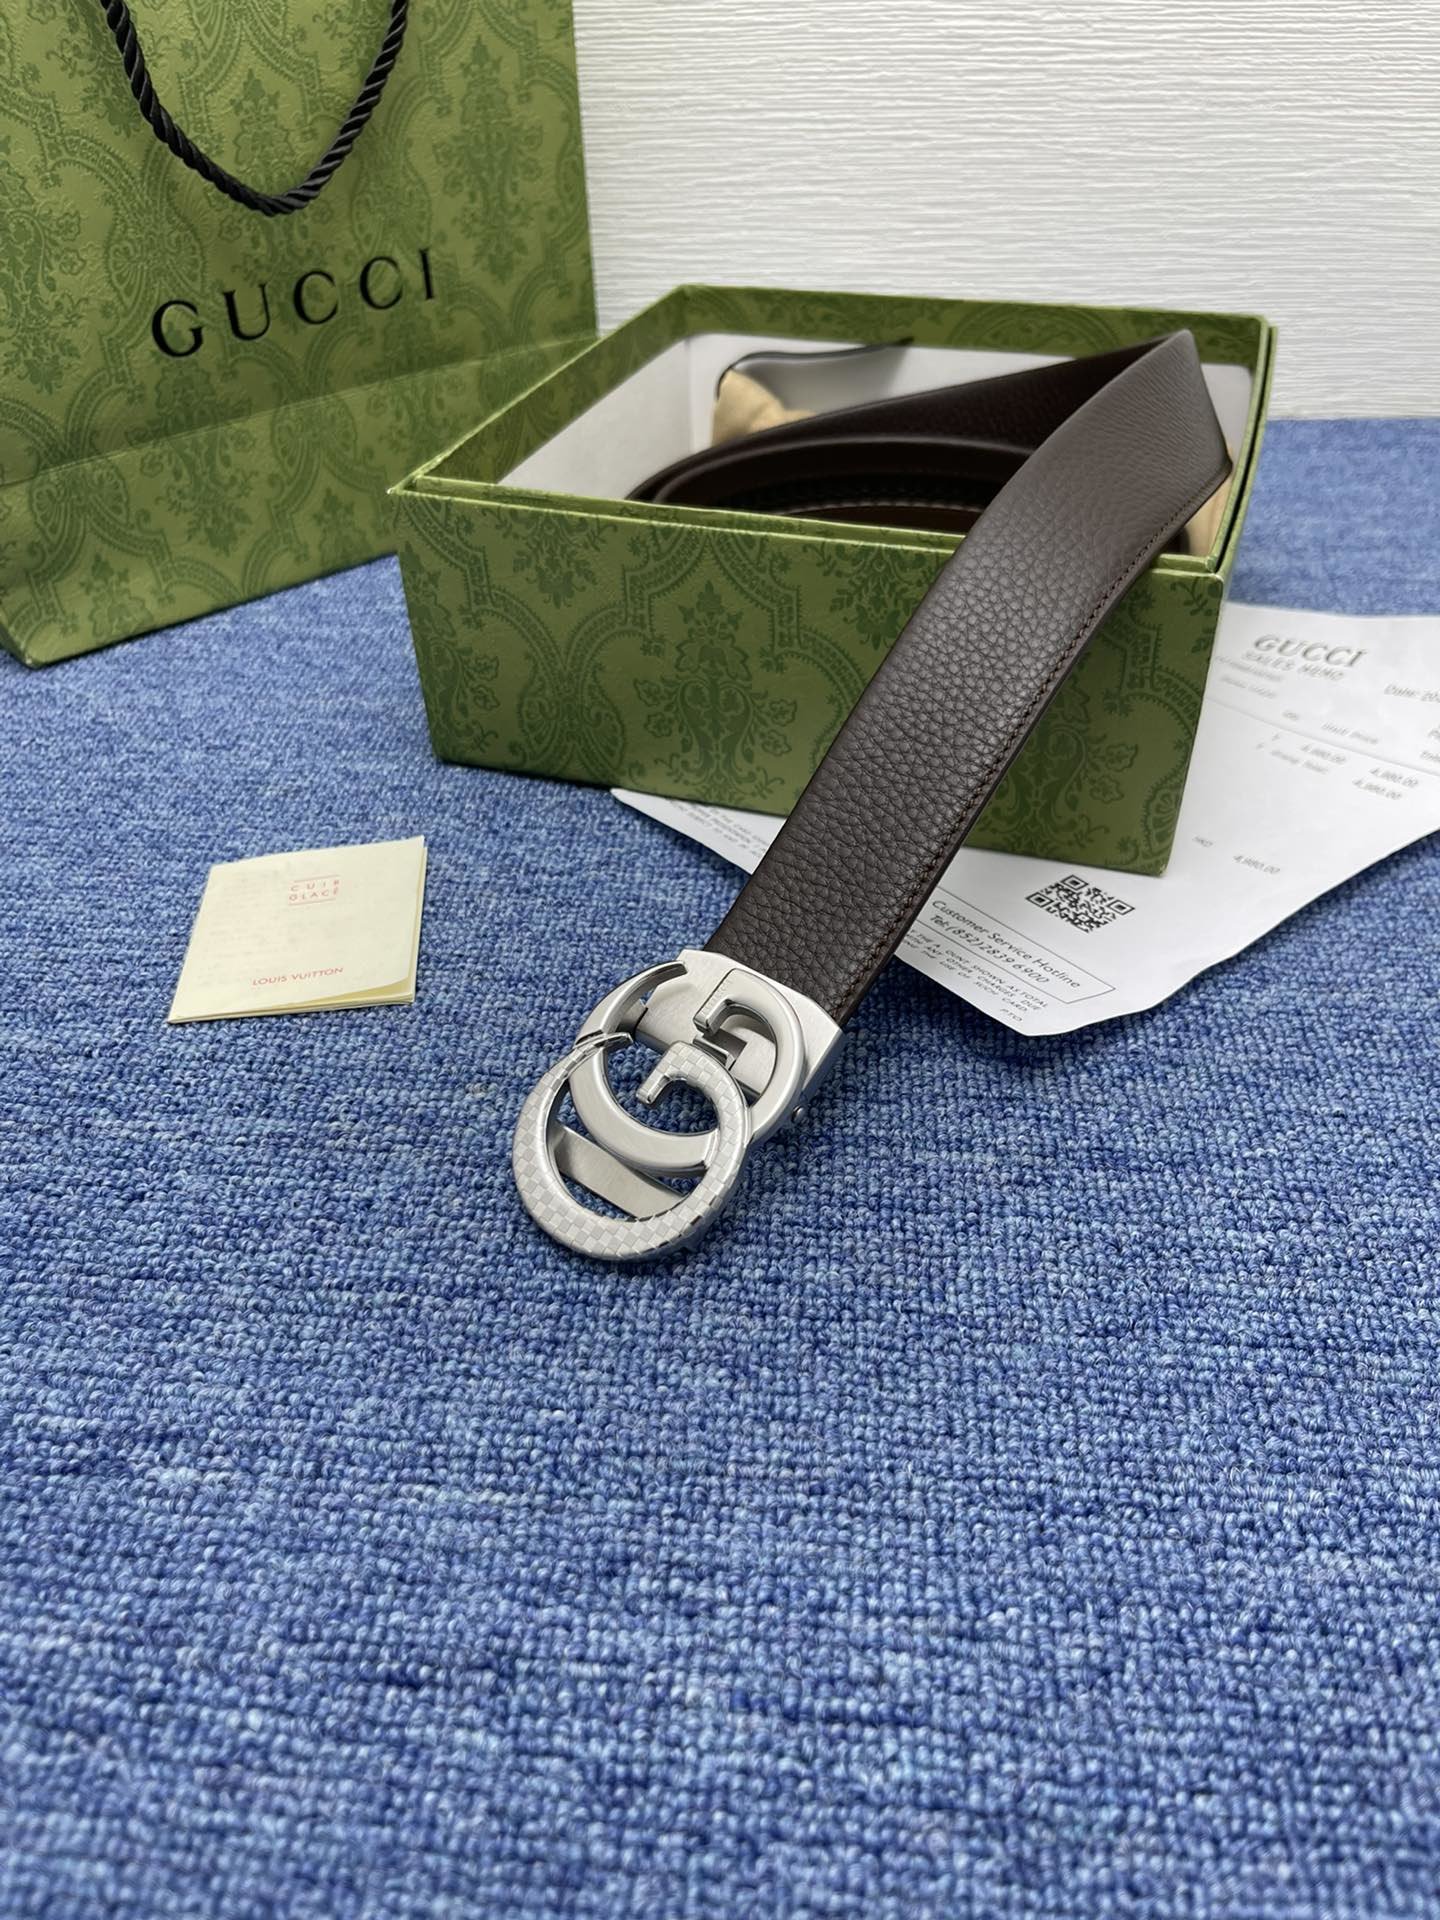 品牌古驰Gucci自动描述采用高级GucciSignature真皮精制而成触感厚实饰以双G商标带扣腰带为